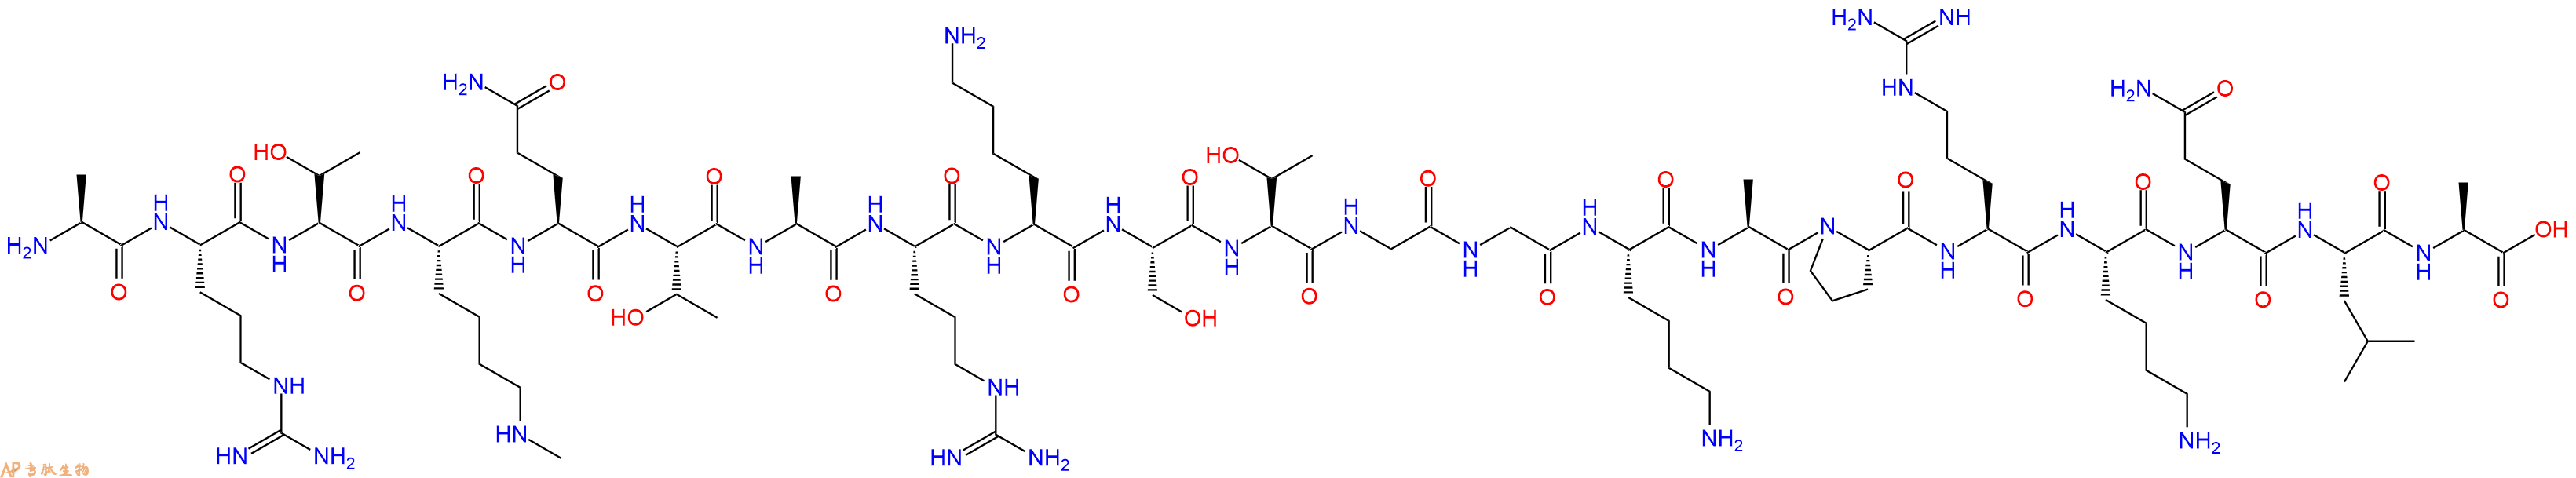 专肽生物产品组蛋白肽段[Lys(Me)4]-Histone H3(1-21), H3K4(Me1)